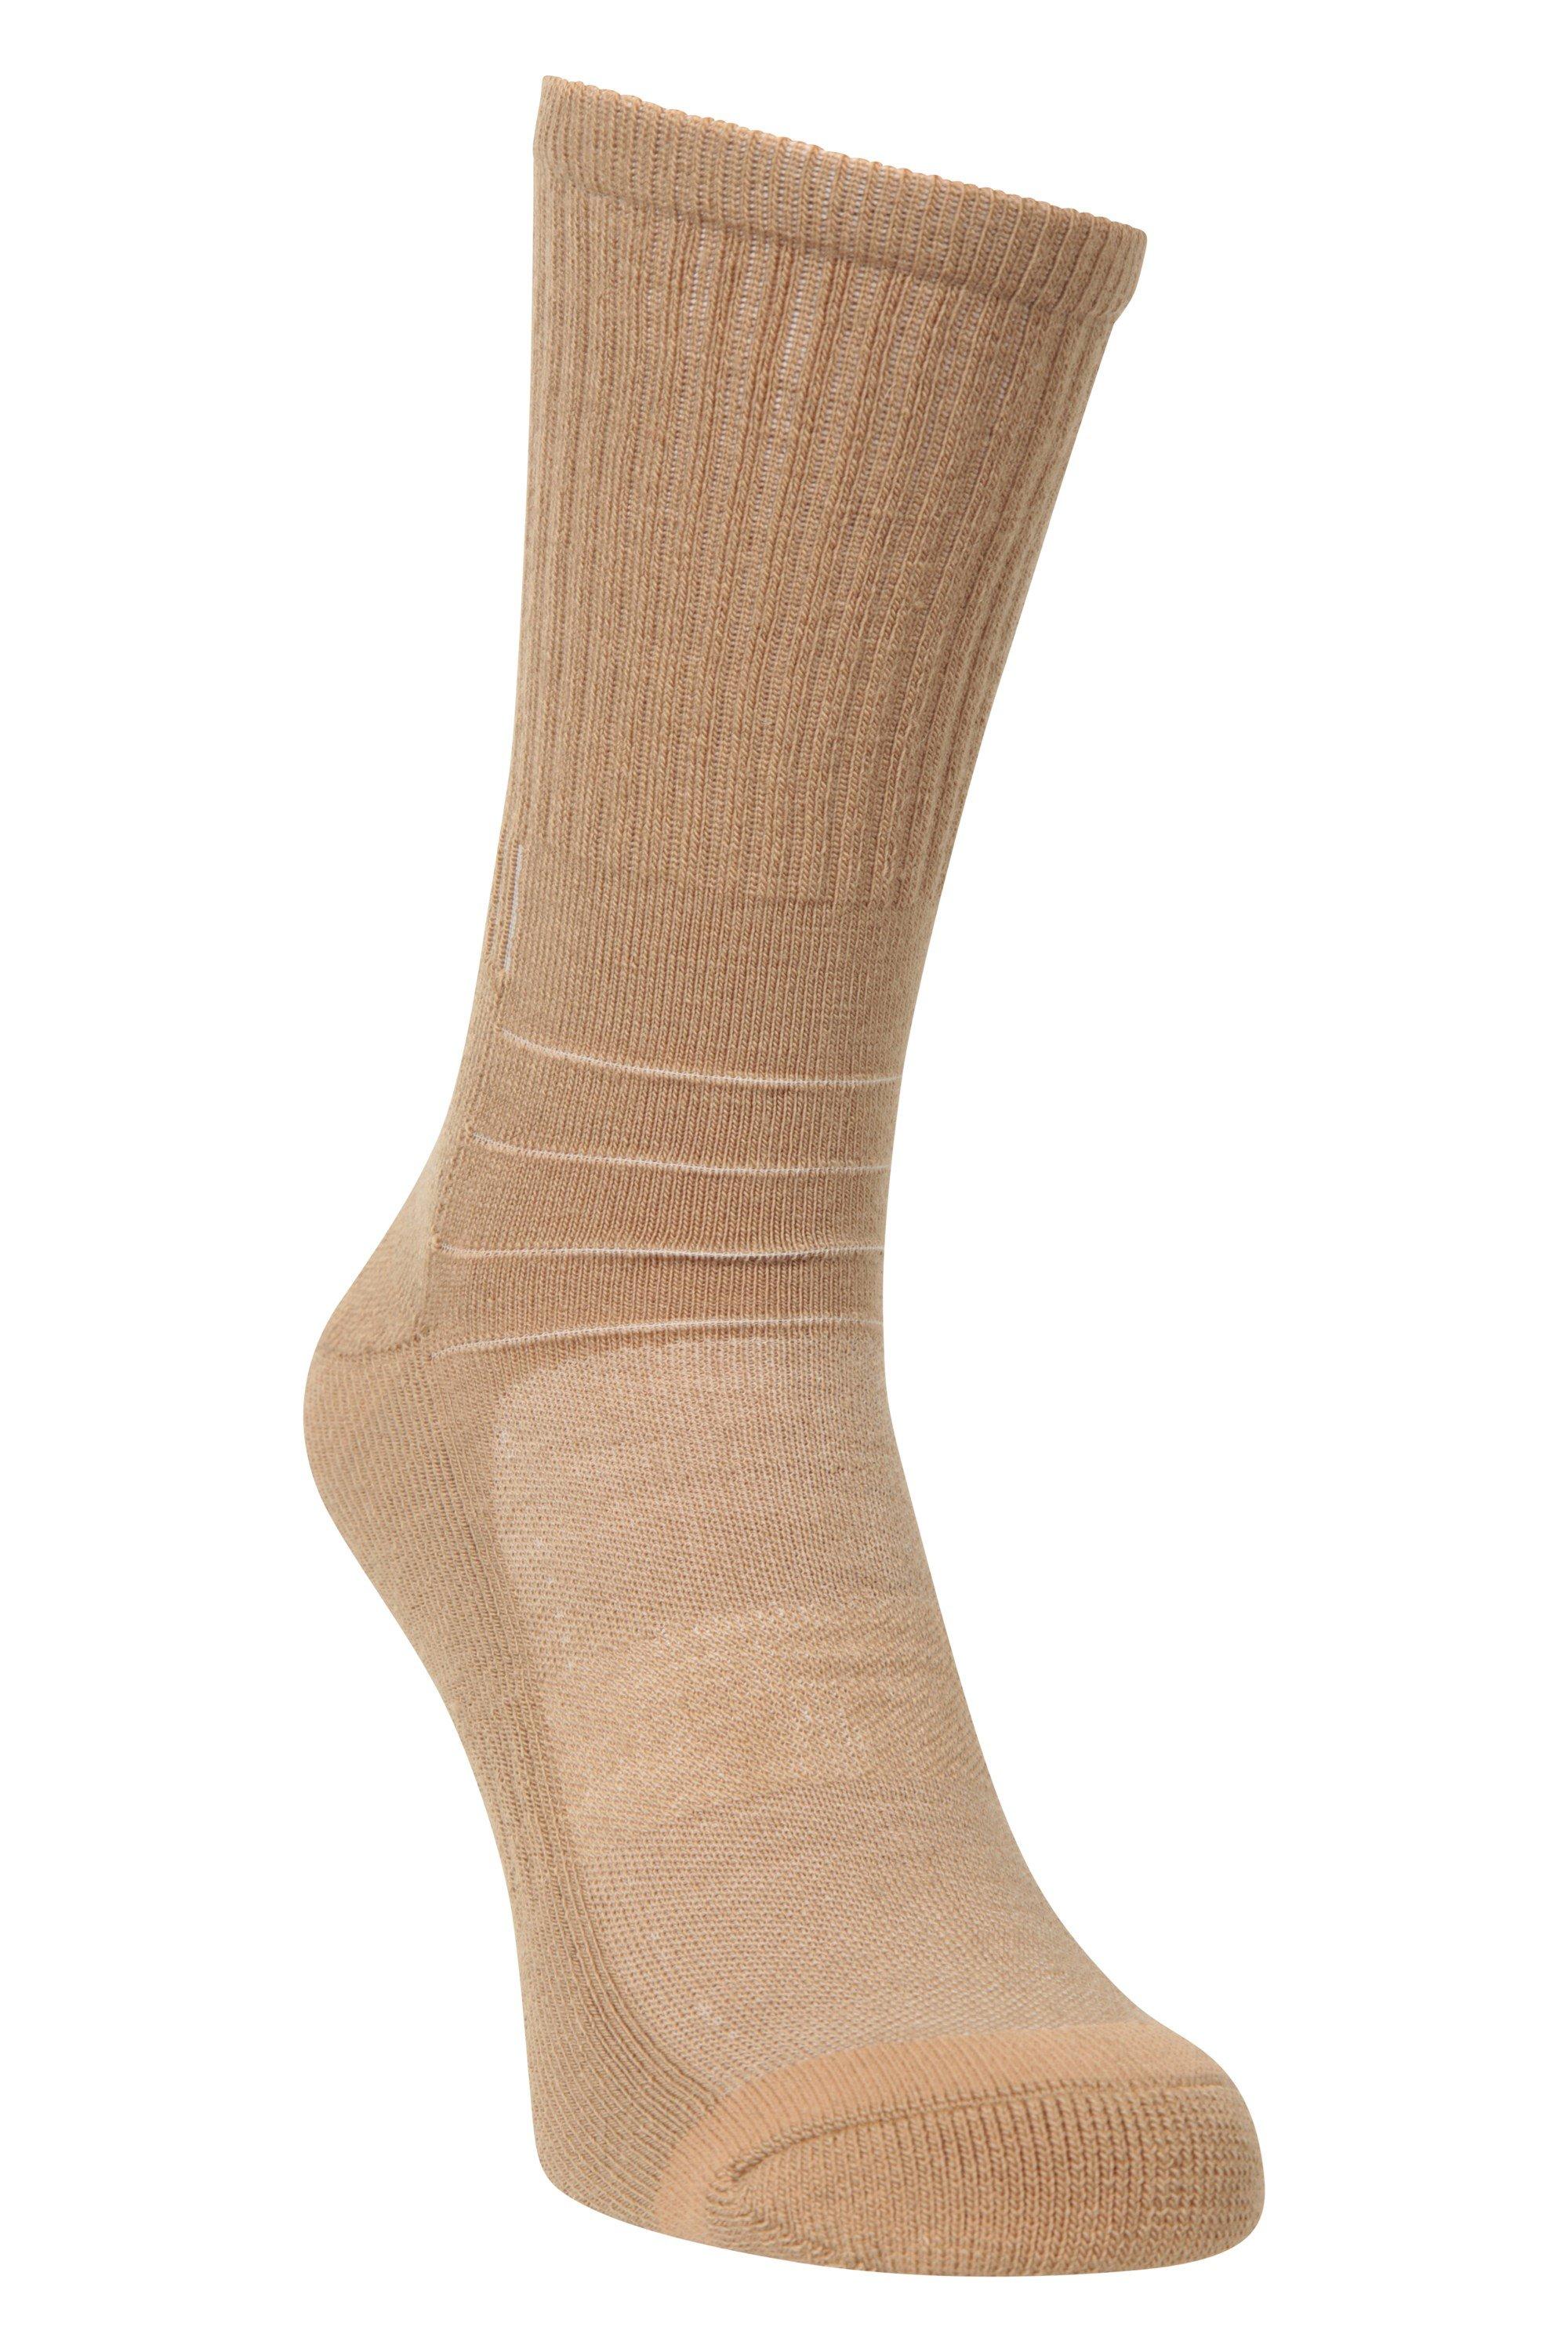 Padded Socks Breathable Lightweight Walking Merino Sock